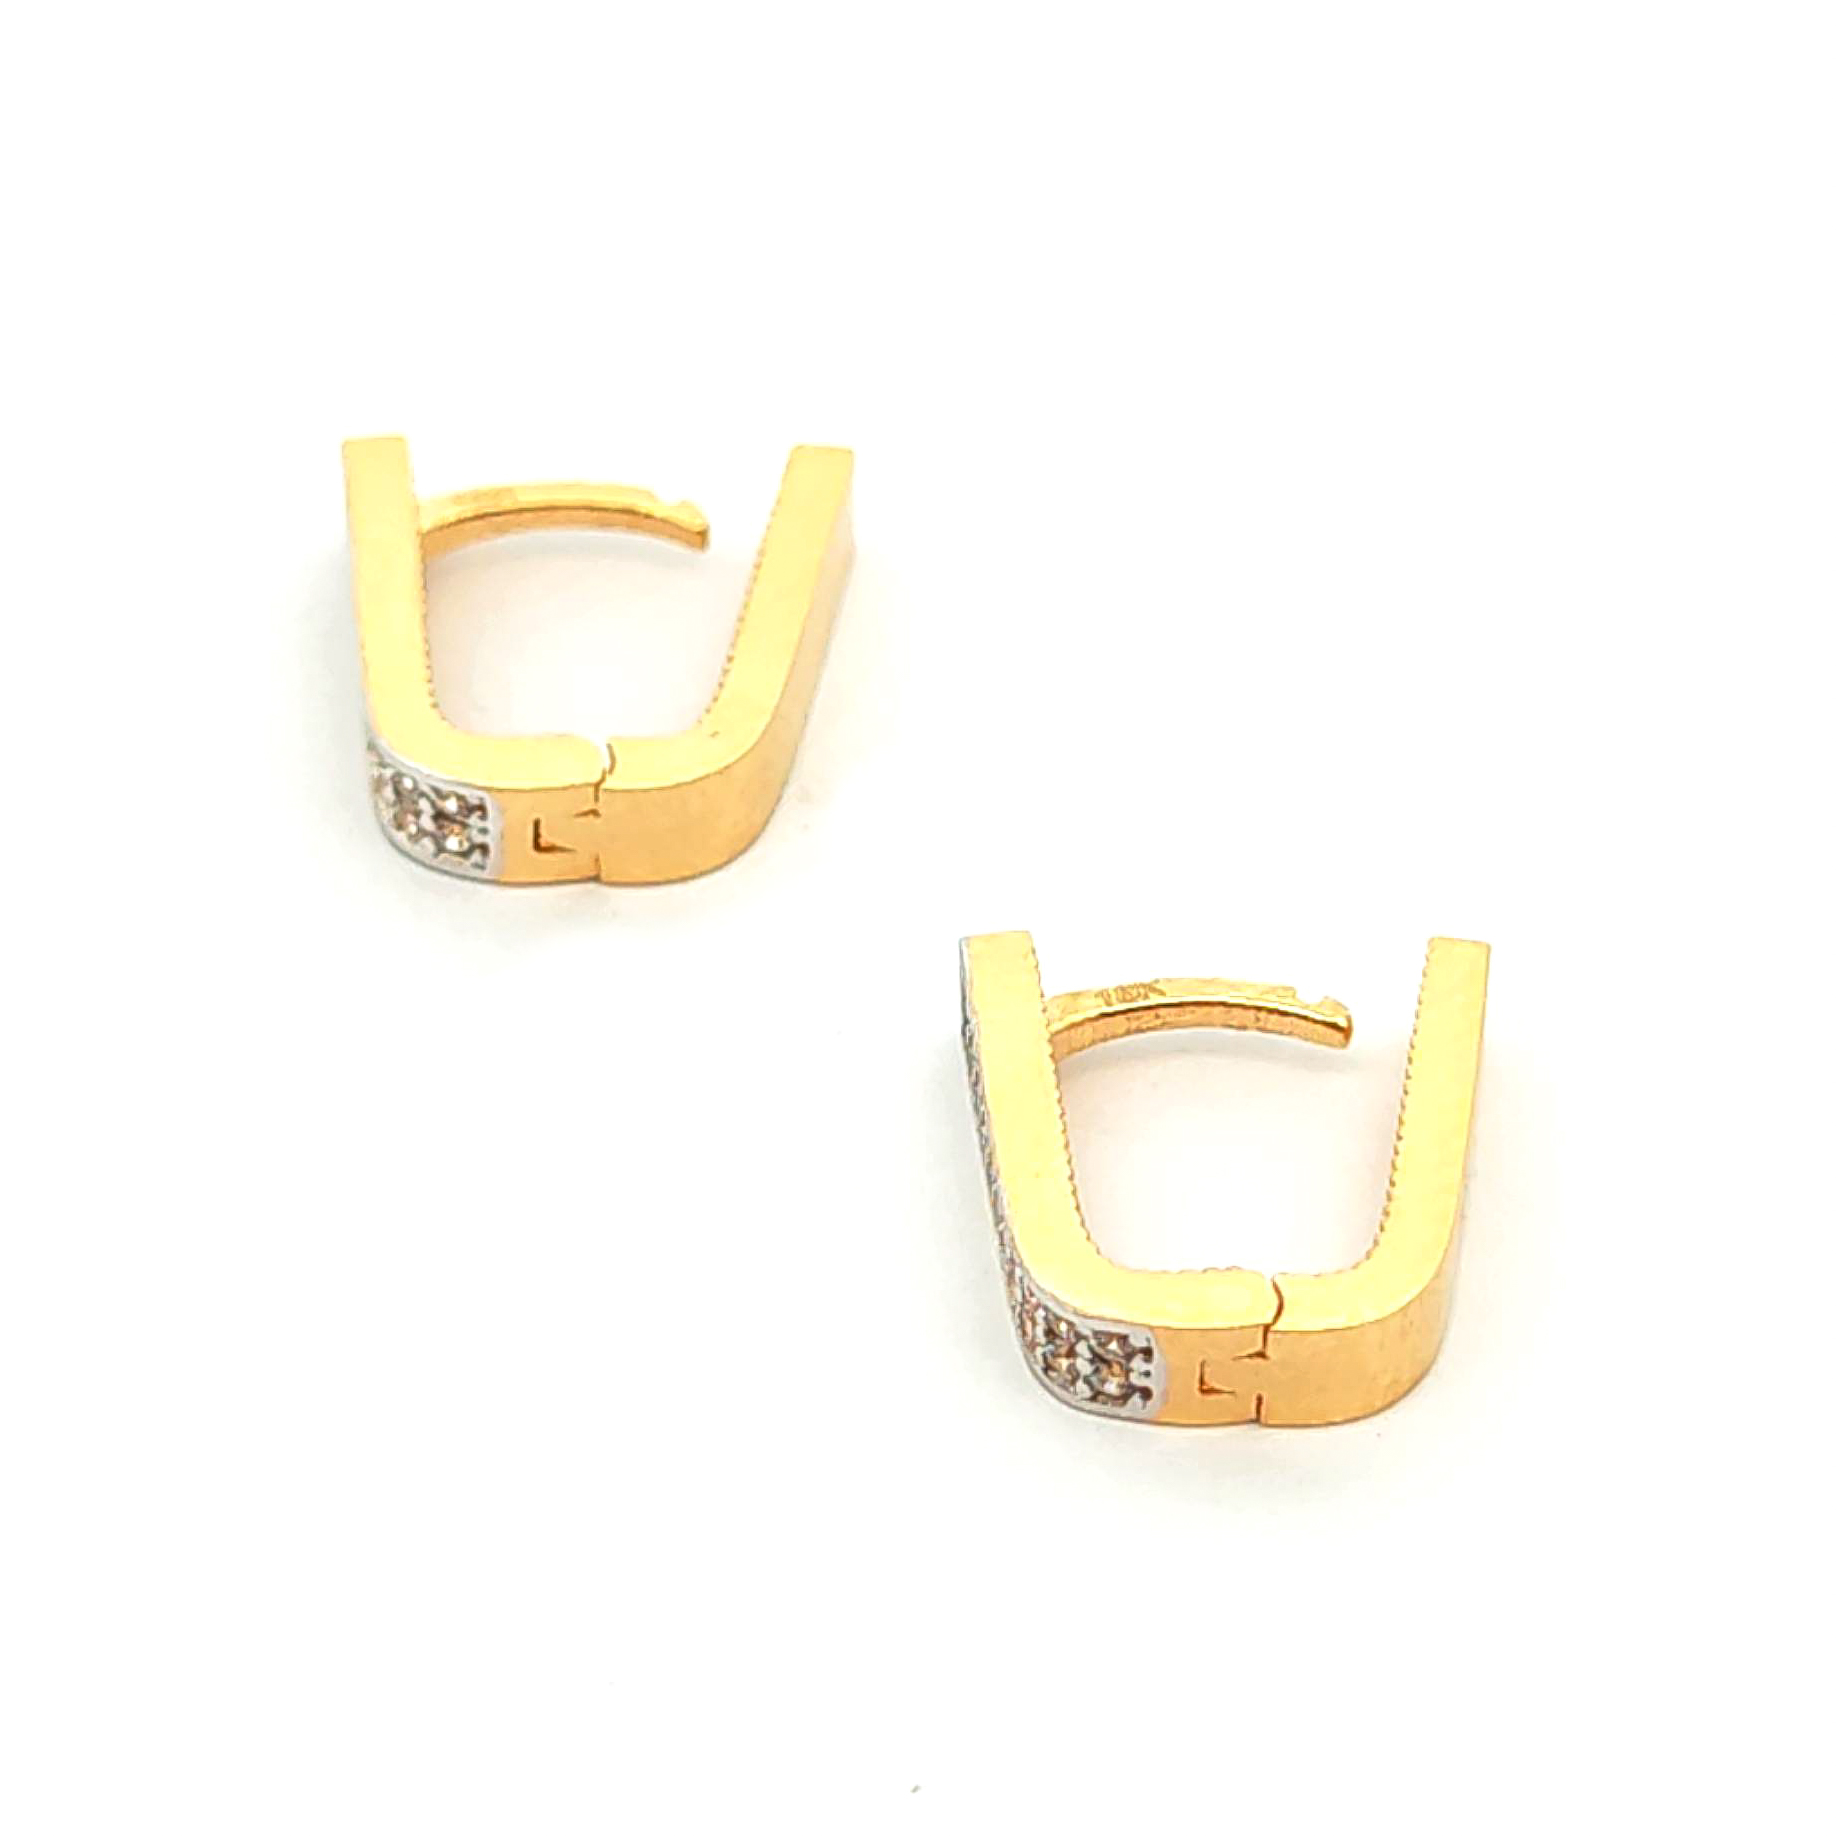 Aros de oro 18k diseño ovalado con 2 filas de circones, peso 3,13 grs 3